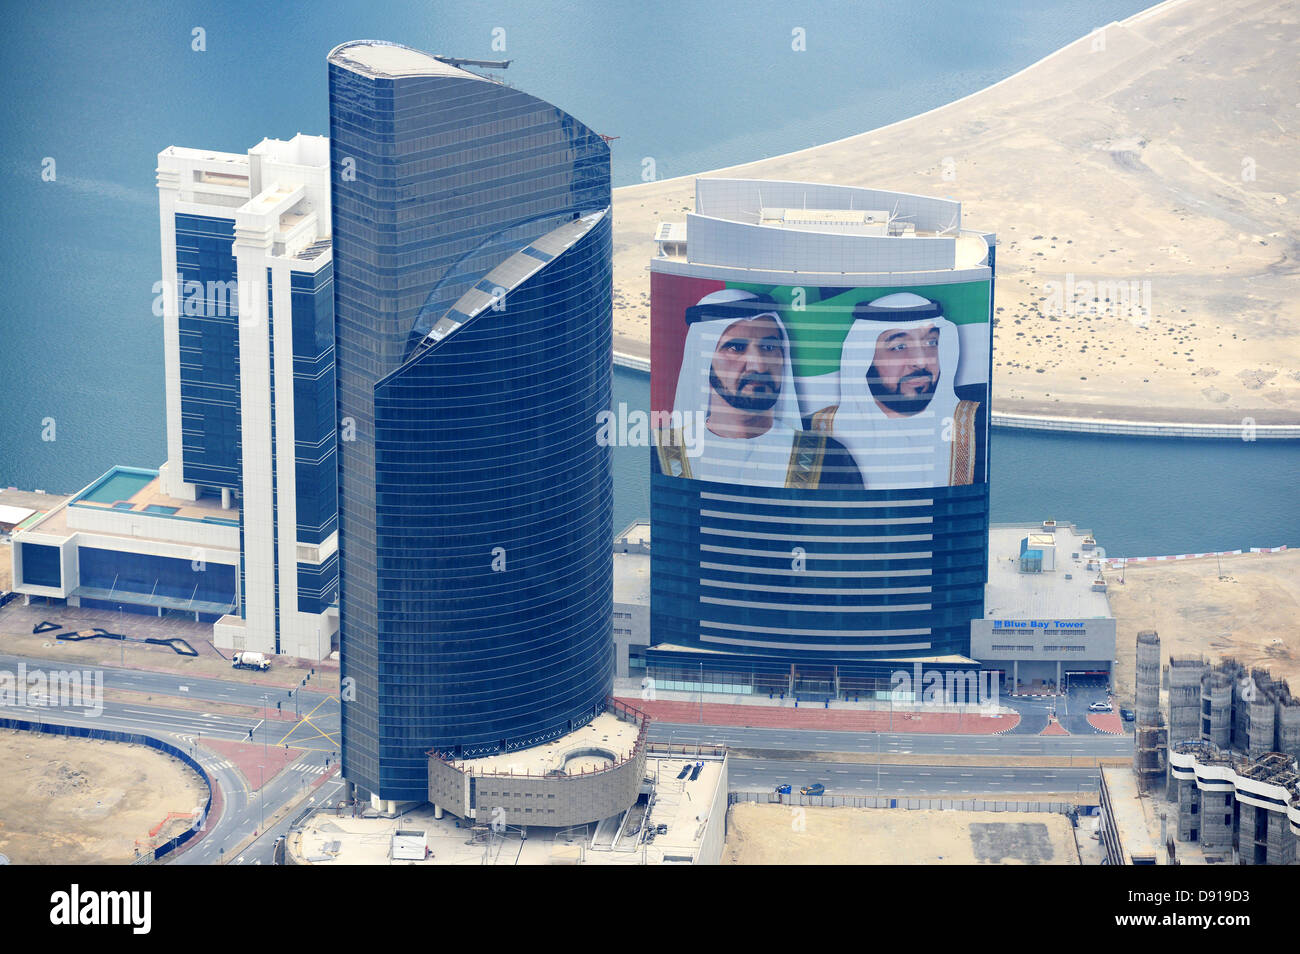 Sheikh Mohammed Bin Rashid Al Maktoum, Primo Ministro, il suo ritratto adorna di molti edifici in Dubai Emirati Arabi Uniti Foto Stock